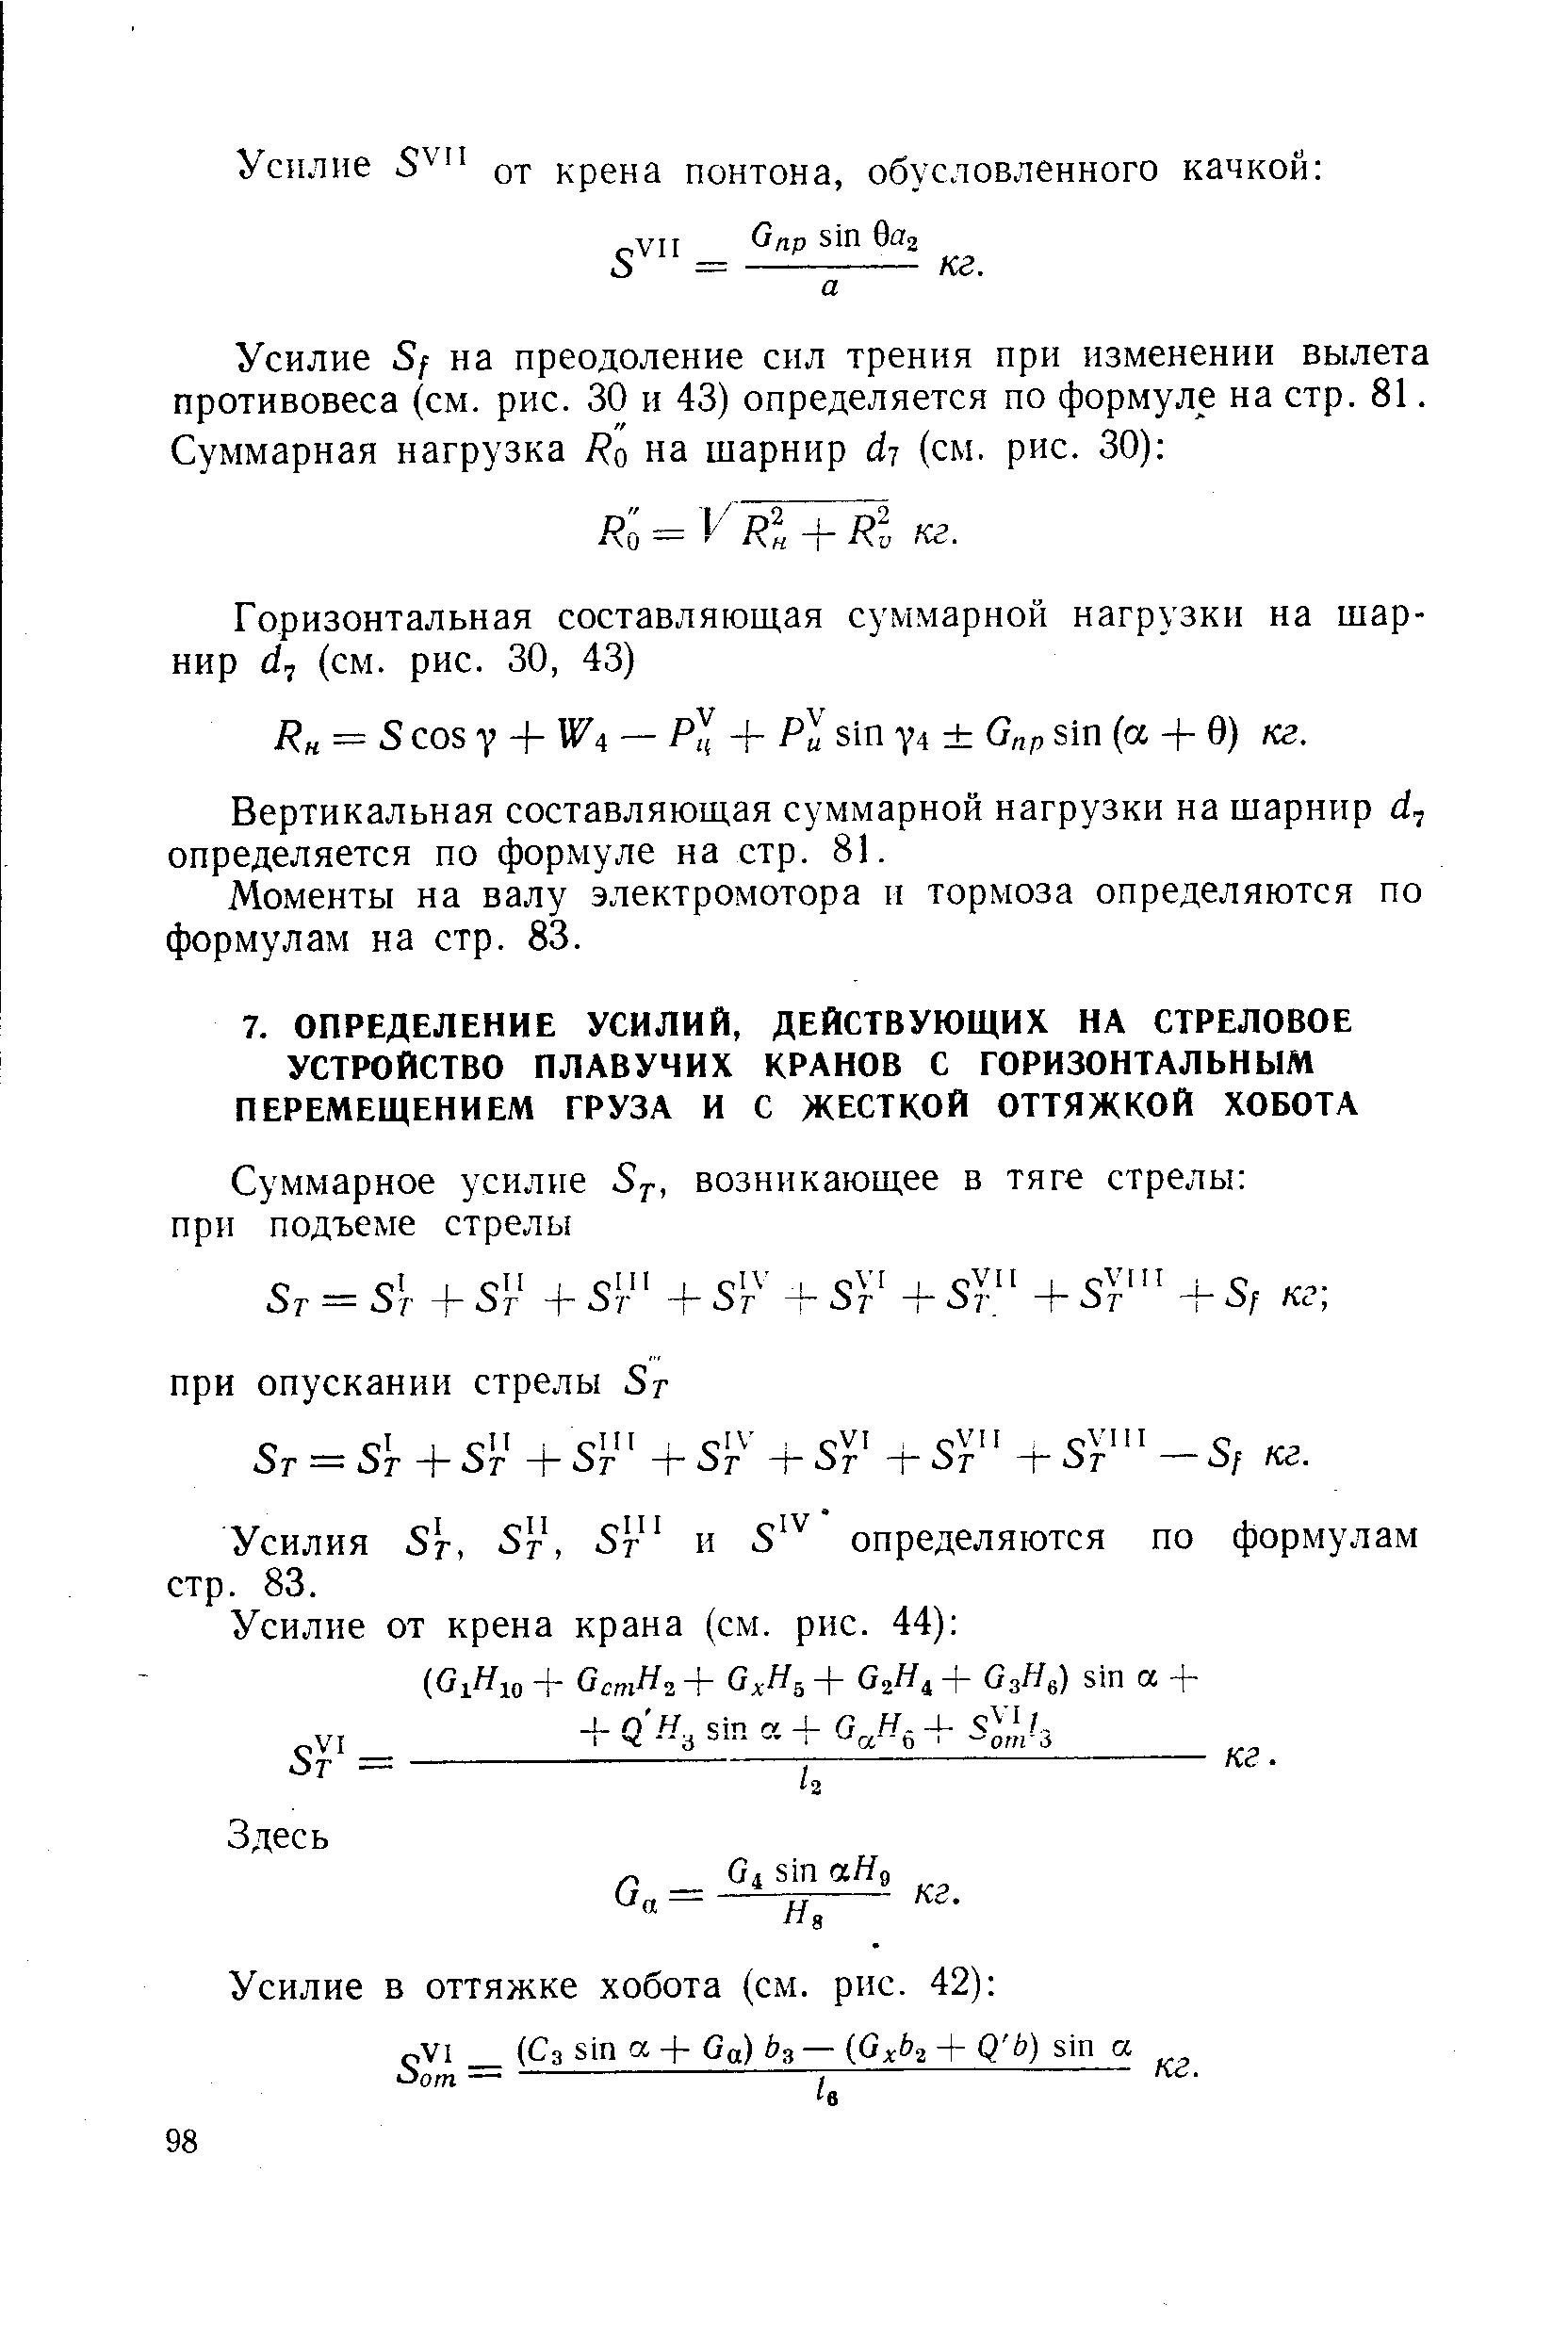 Усилия Sr, Sr, Sr и S определяются по формулам стр. 83.
